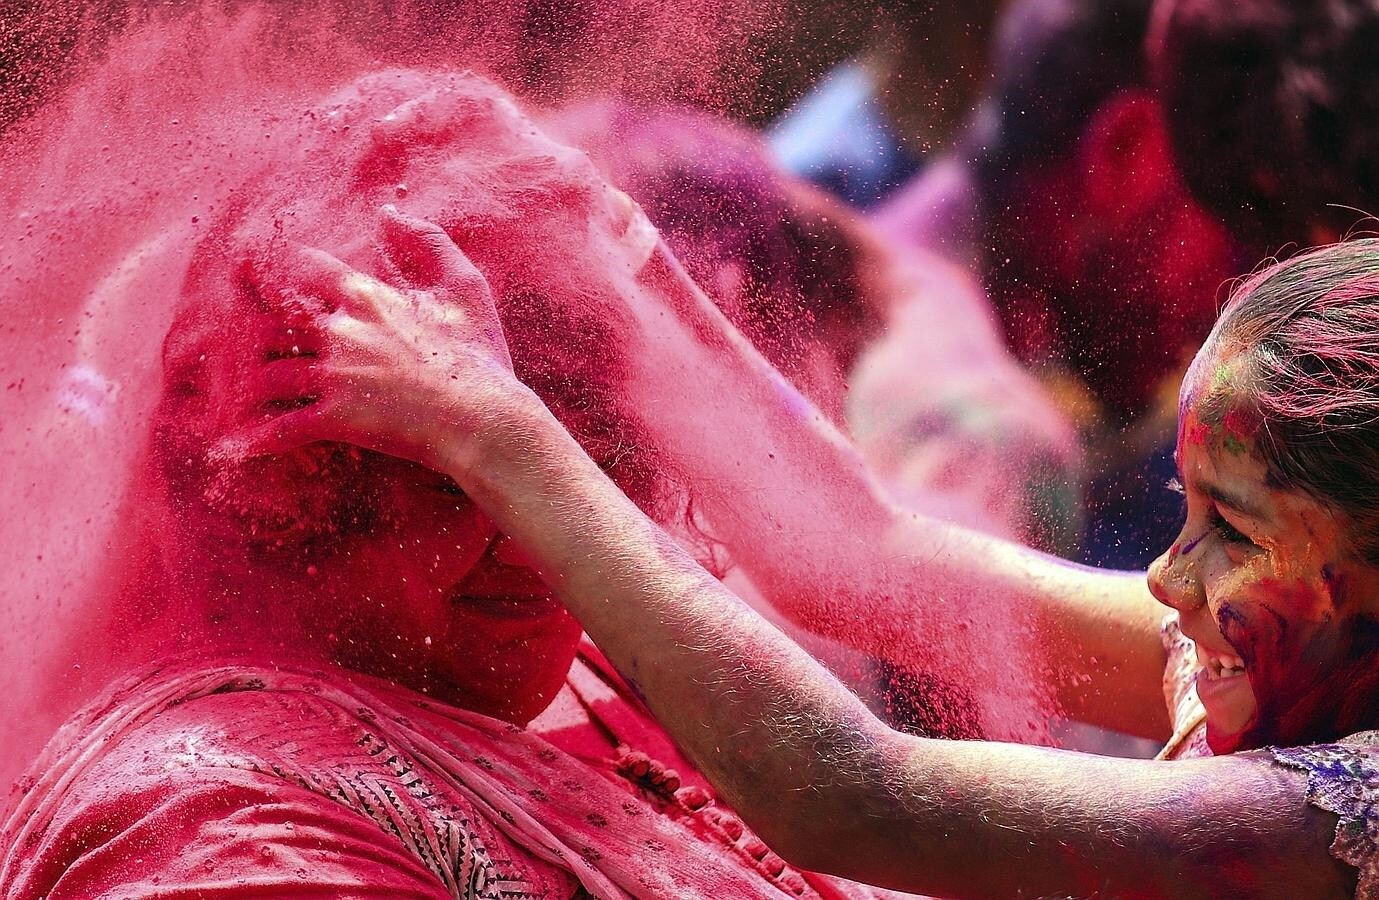 El fabuloso estallido de colores del festival Holi